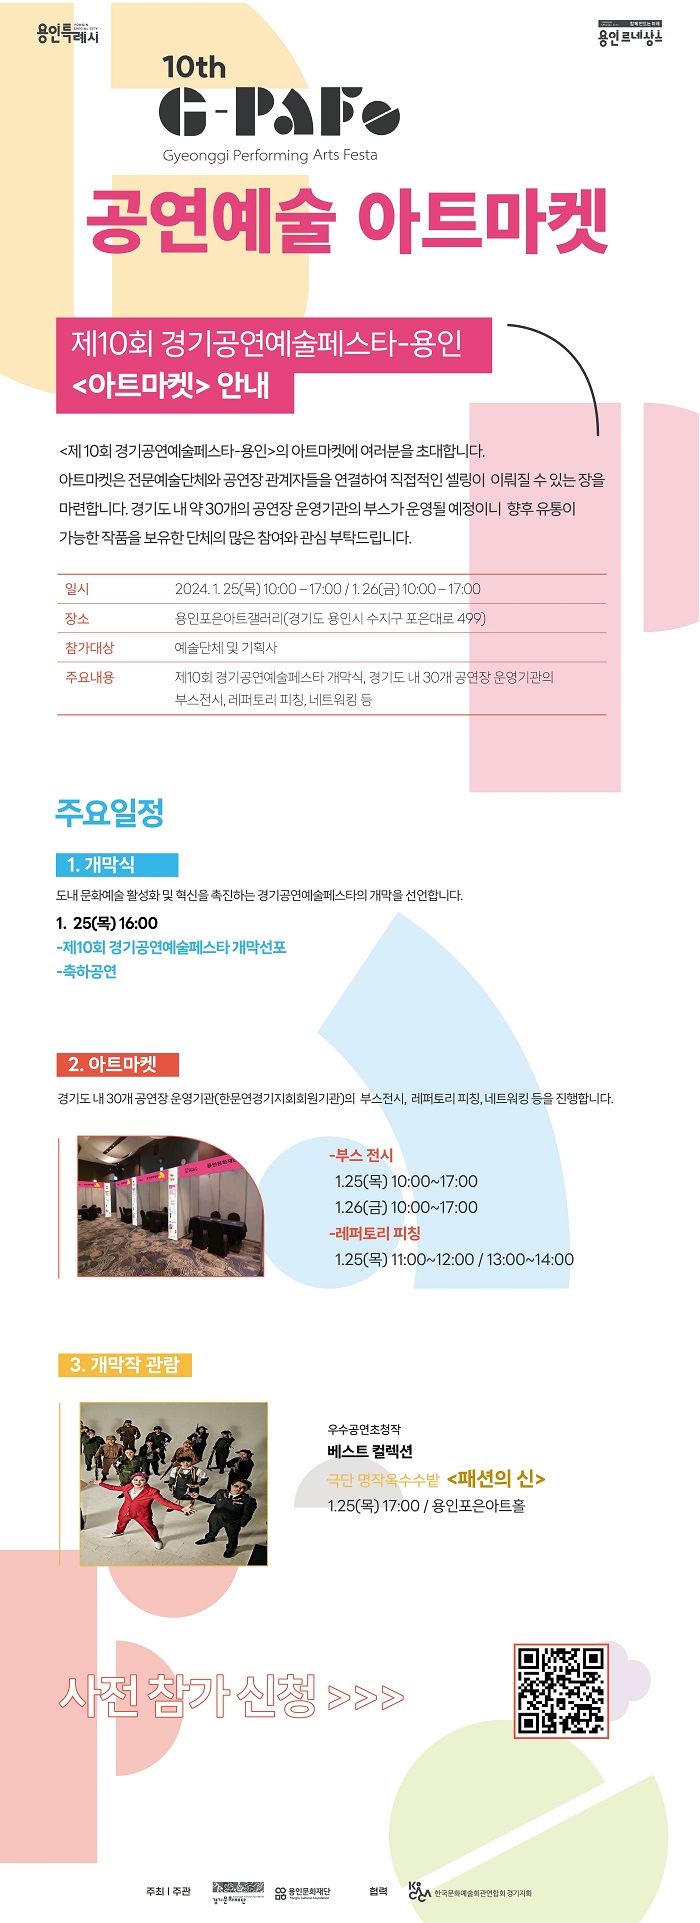 용인특례시. 용인르네상스. 10th G-PAF(Gyeonggi Performing Arts Festa) 공연예술 아트마켓 제10회 경기공연예술페스타-용인 < 아트마켓 > 안내. < 제10회 경기공연예술페스타-용인 > 의 아트마켓에 여러분을 초대합니다. 아트마켓은 전문예술단체와 공연장 관계자들을 연결하여 직접적인 셀링이 이뤄질 수 있는 장을 마련합니다. 경기도내 약 30개의 공연장 운영기관의 부스가 운영될 예정이니 향후 유통이 가능한 작품을 보유한 단체의 많은 참여와 관심 부탁드립니다. ㅇ일시 : 2024.1.25(목) 10:00-17:00 / 1.26(금) 10:00-17:00 ㅇ장소 : 용인포은아트갤러리(경기도 용인시 수지구 포은대로499) ㅇ참가대상 : 예술단체 및 기획사 ㅇ주요내용 : 제10회 경기공연예술페스타 개막식, 경기도 내 30개 공연장 운영기관의 부스전시, 레퍼토리 피칭, 네트워킹 등 □주요일정 1. 개막식 : 도내 문화예술 활성화및 혁신을 촉진하는 경기공연예술페스타의 개막을 선언합니다. ① 25(목) 16:00 -제10회 경기공연예술페스타 개막선포 -축하공연 2. 아트마켓 : 경기도내 30개 공연장 운영기관(한문연경기지회회원기관)의 부스전시, 레퍼토리 피칭, 네트워킹 등을 진행합니다. -부스 전시 : 1.25(목) 10:00~17:00 | 1.26(금) 10:00-17:00 -레퍼토리 피칭 : 1.25(목) 11:00~12:00 / 13:00~14:00 3. 개막작 관람 : 우수공연초청작 베스트 컬렉션 극단 명작옥수수밭 < 패션의 신 > 1.25(목) 17:00 / 용인포은아트홀. 사전 참가신청